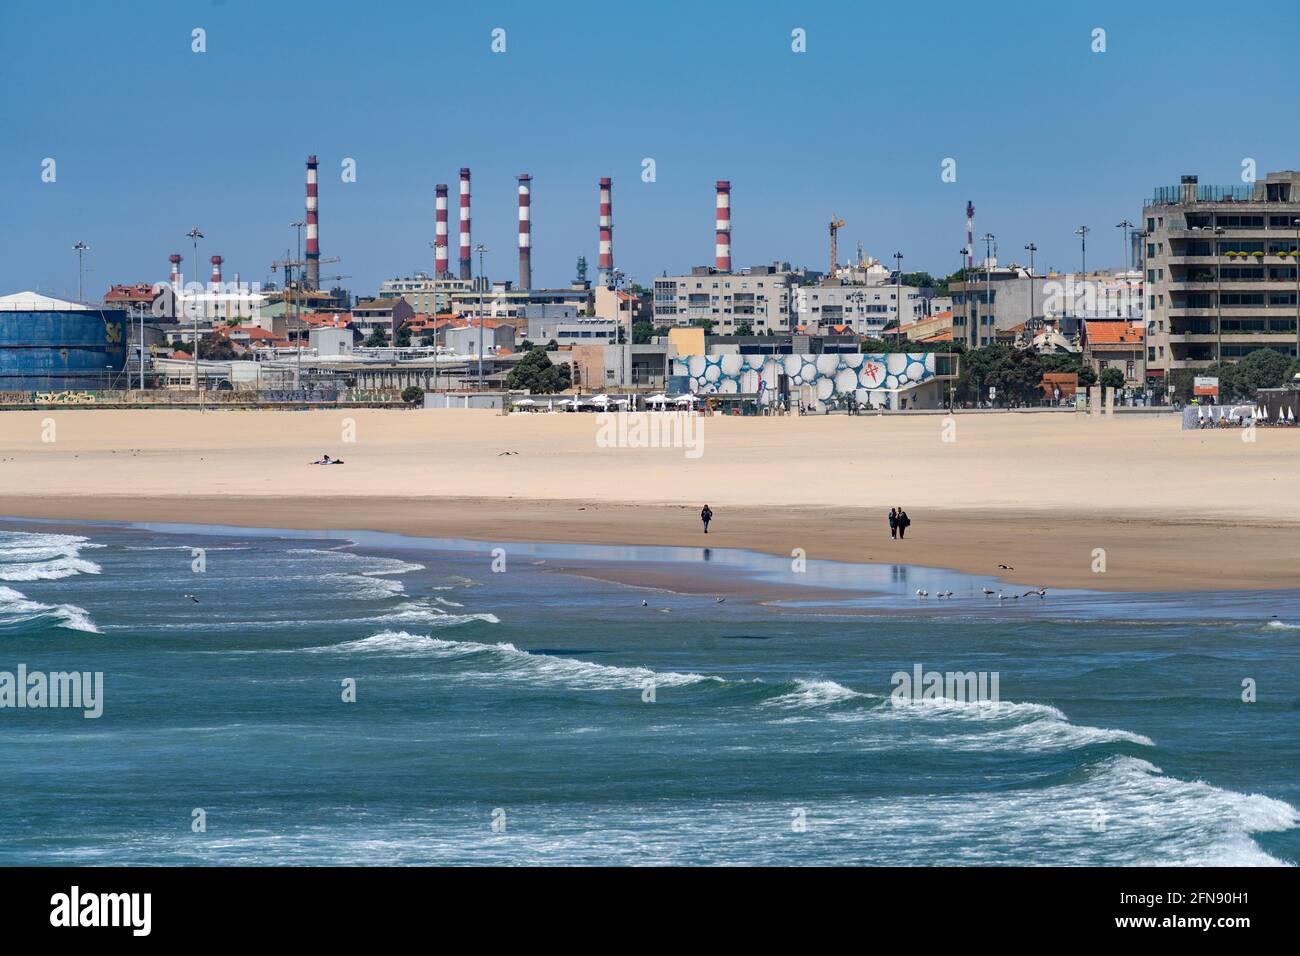 AM Strand von Matosinhos am Atlantik und Ölraffinerie, Matosinhos BEI Porto, Portugal, Europa | Atlantic Matosinhos Beach and Oil raffinerie, Matosin Banque D'Images